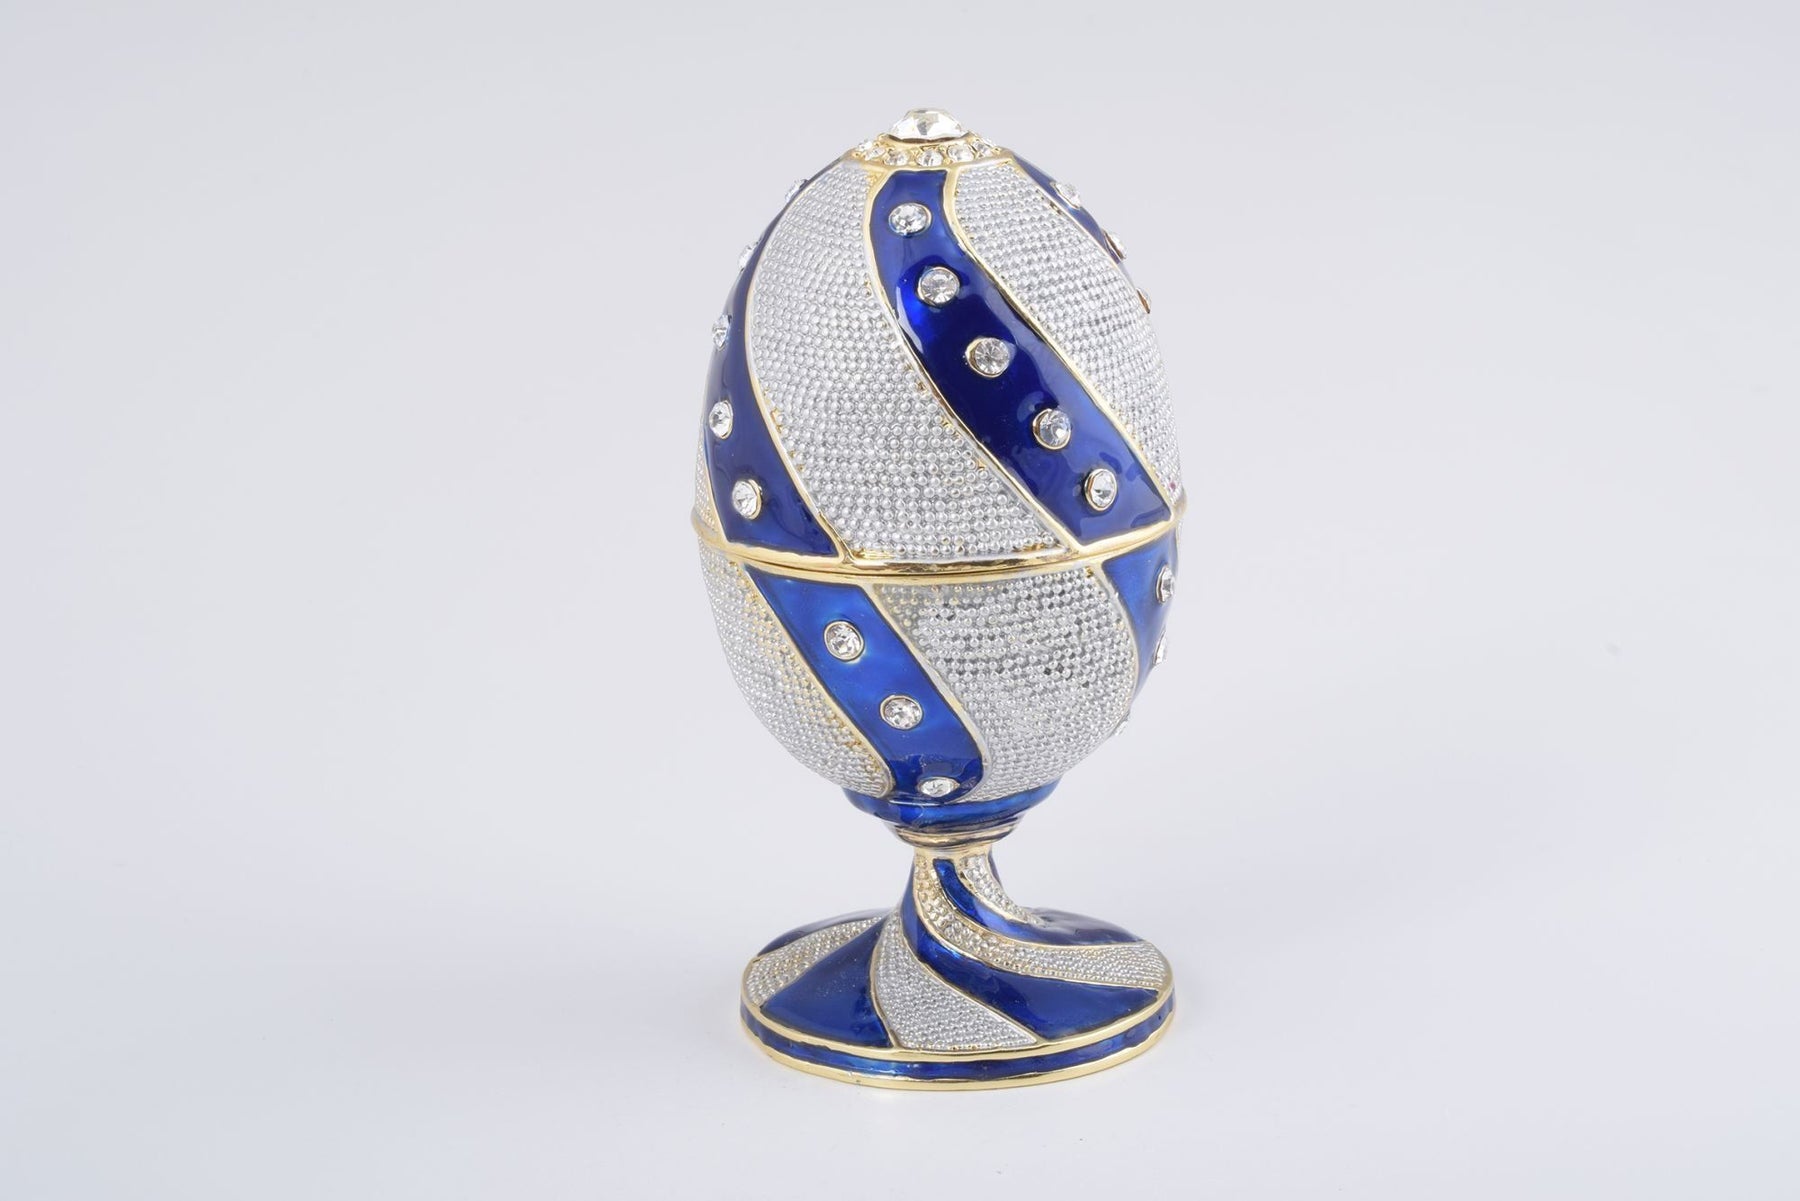 Blue & White Faberge Egg  Keren Kopal